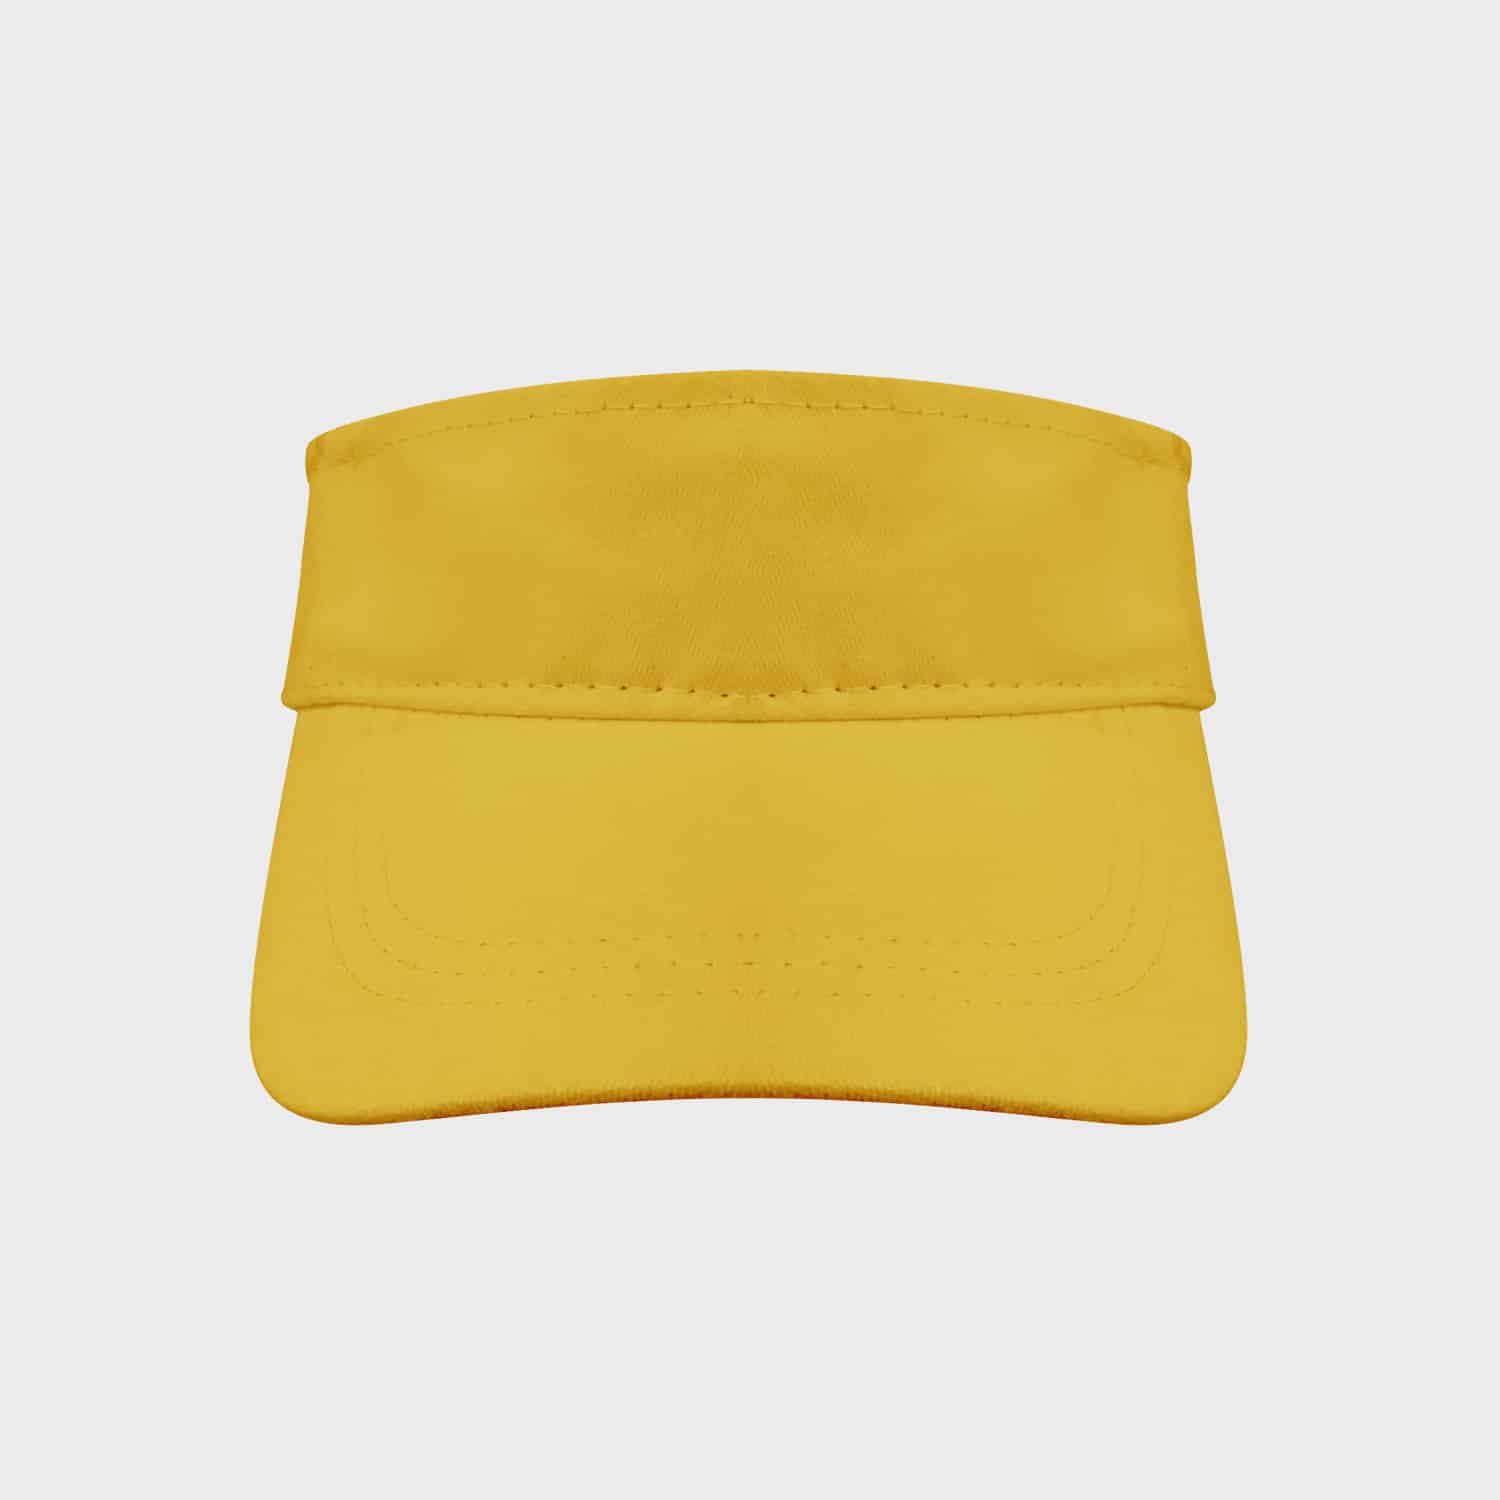 sunviser-visor-yellow-kaufen-besticken_stickmanufaktur